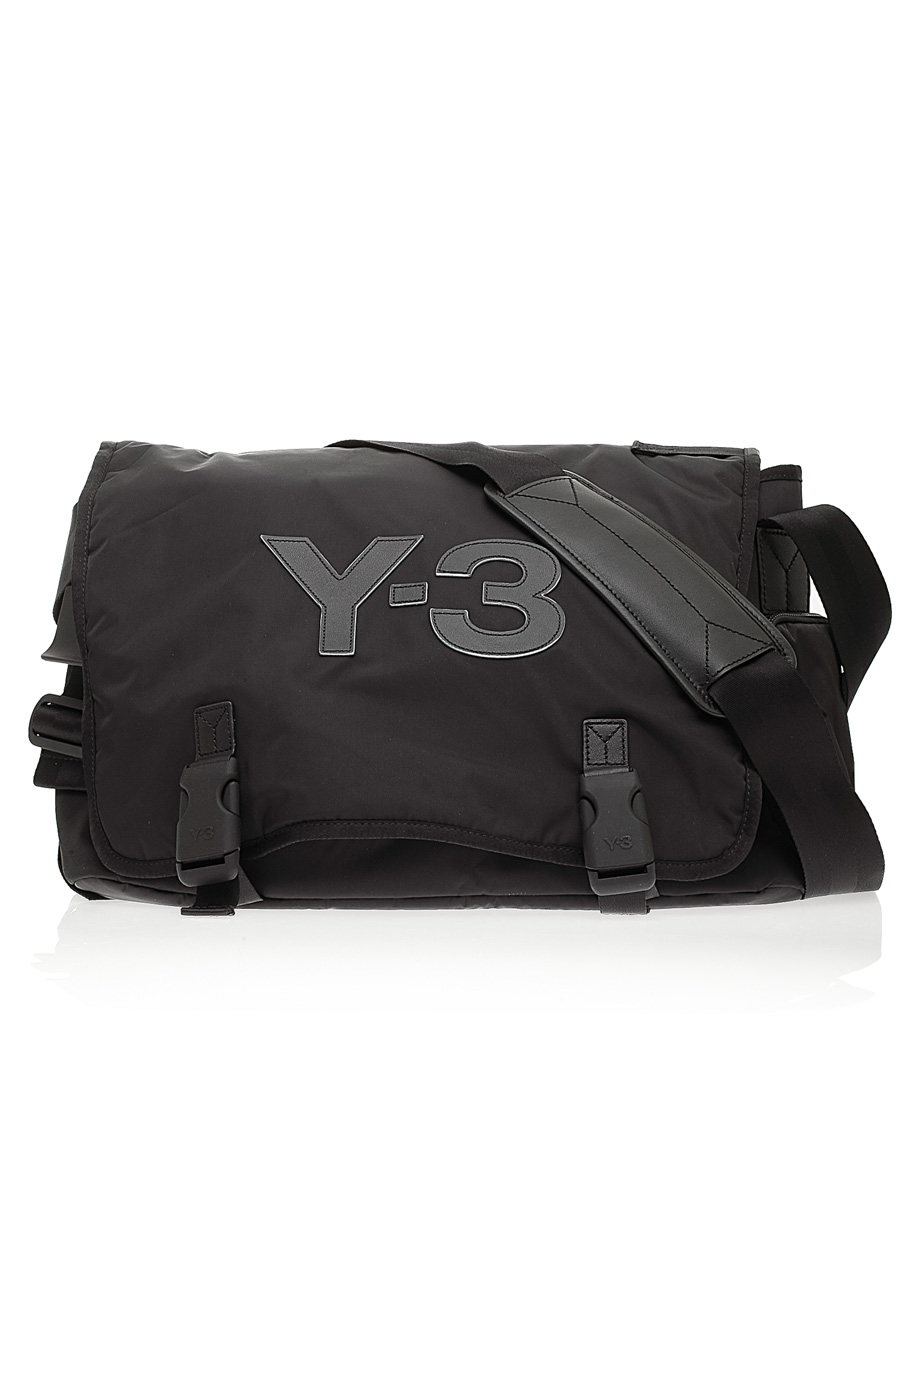 Y-3 Logo Messenger Bag in Black - Lyst